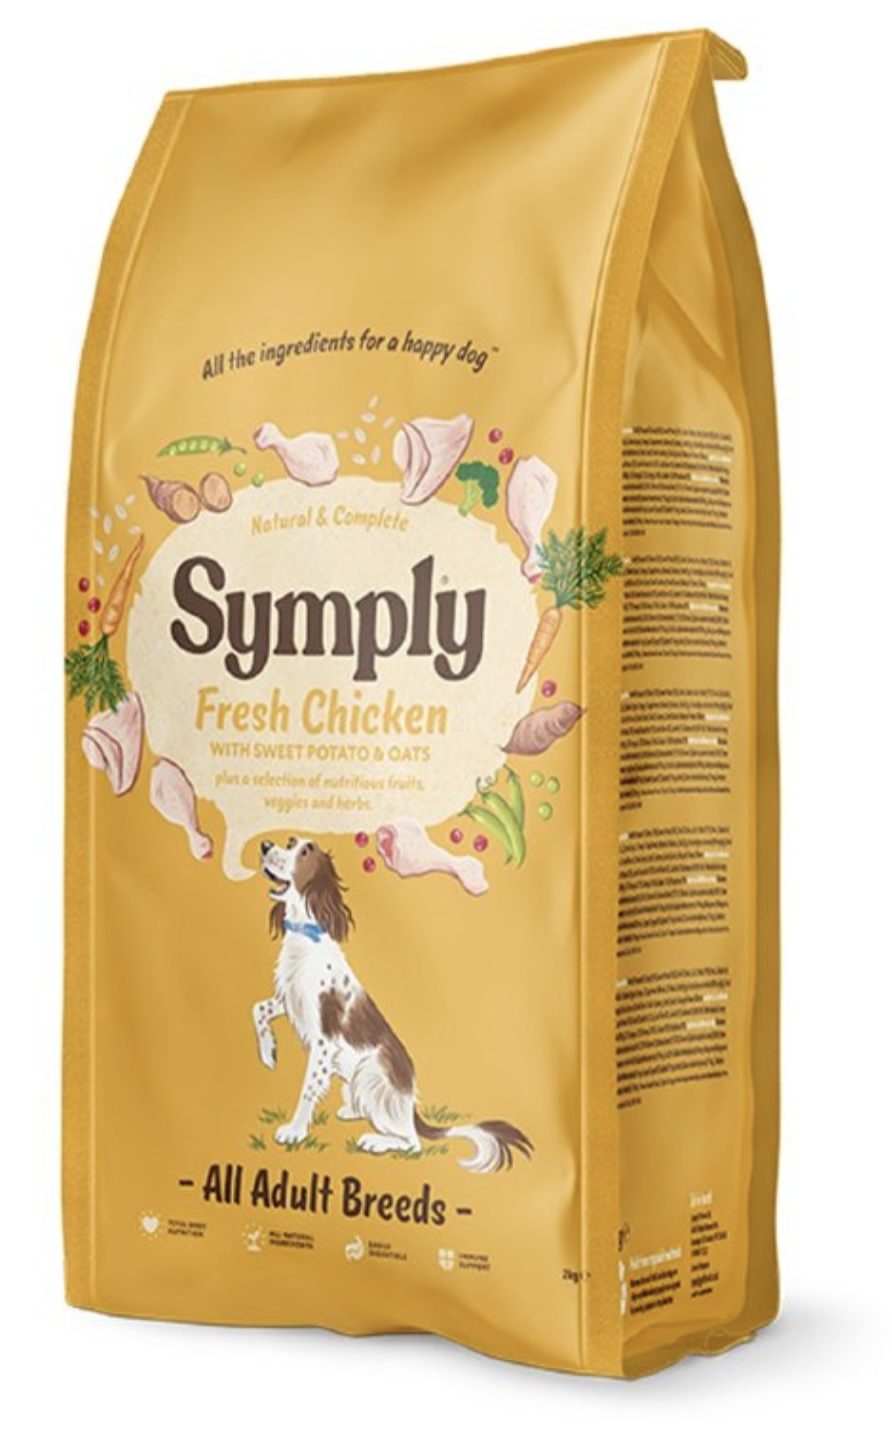 Symply fresh Chicken